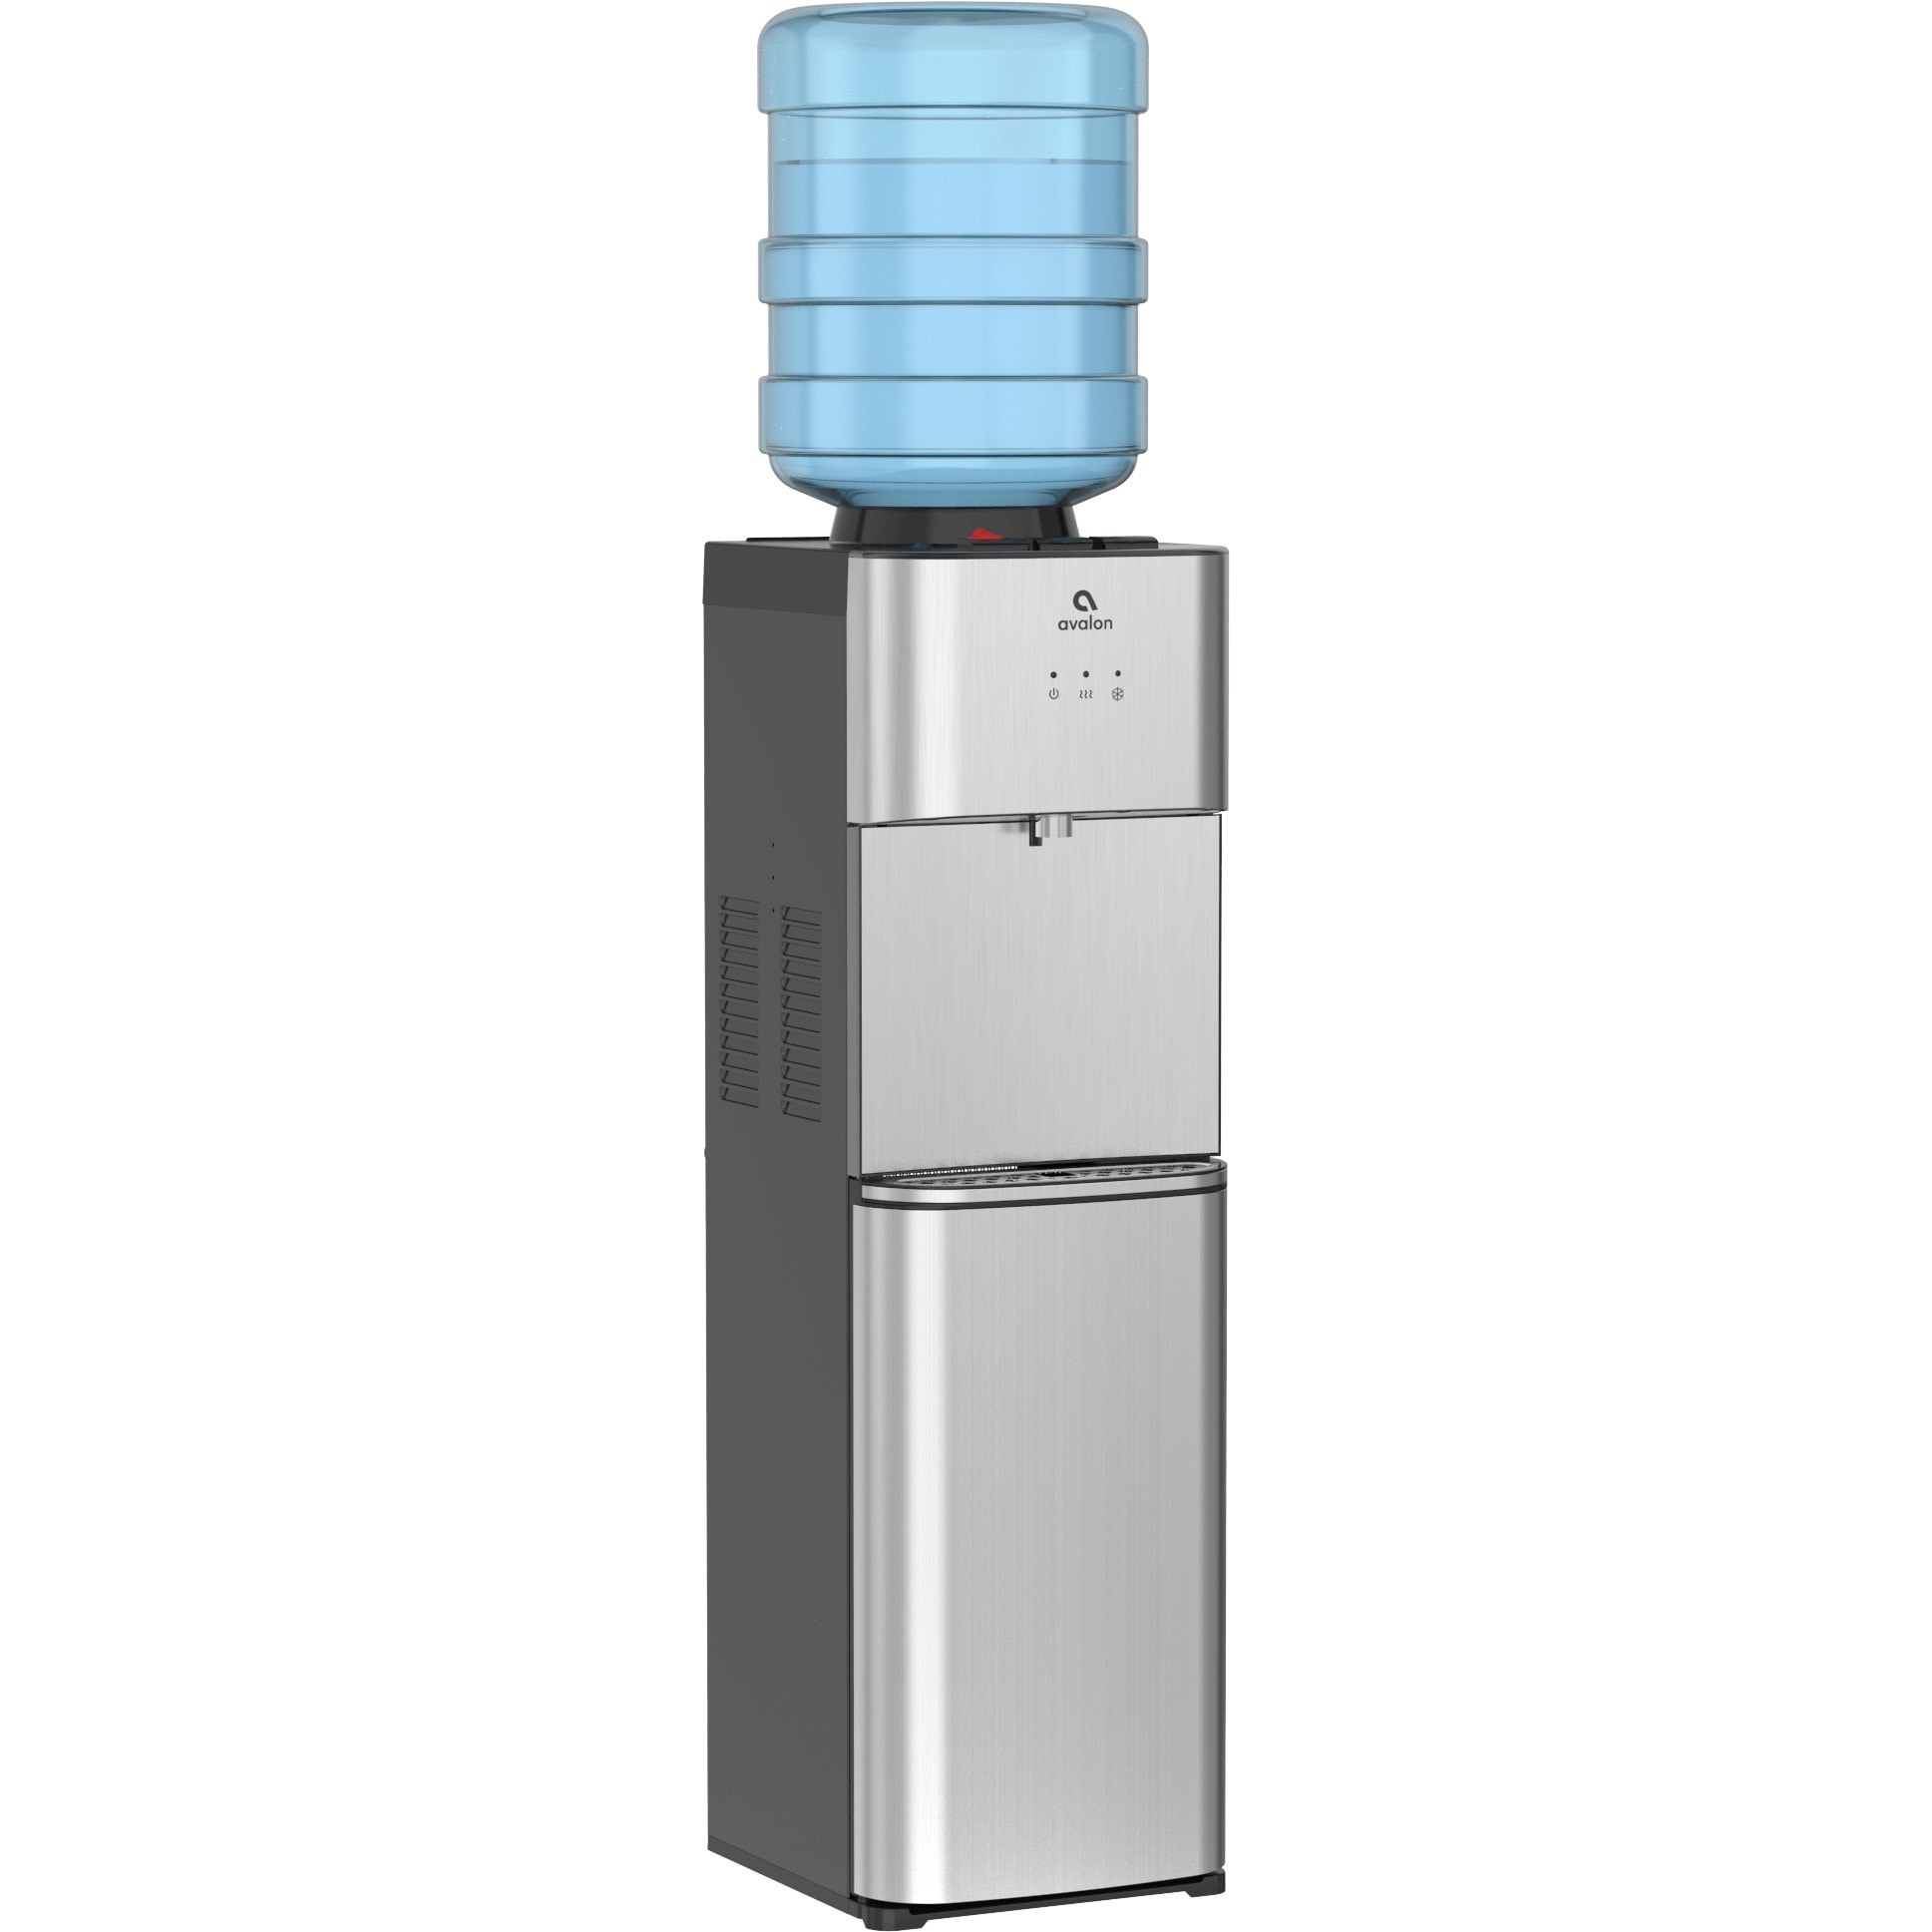 Avalon B8WHT Touchless Countertop Bottleless Water Cooler Water Dispenser - Hot